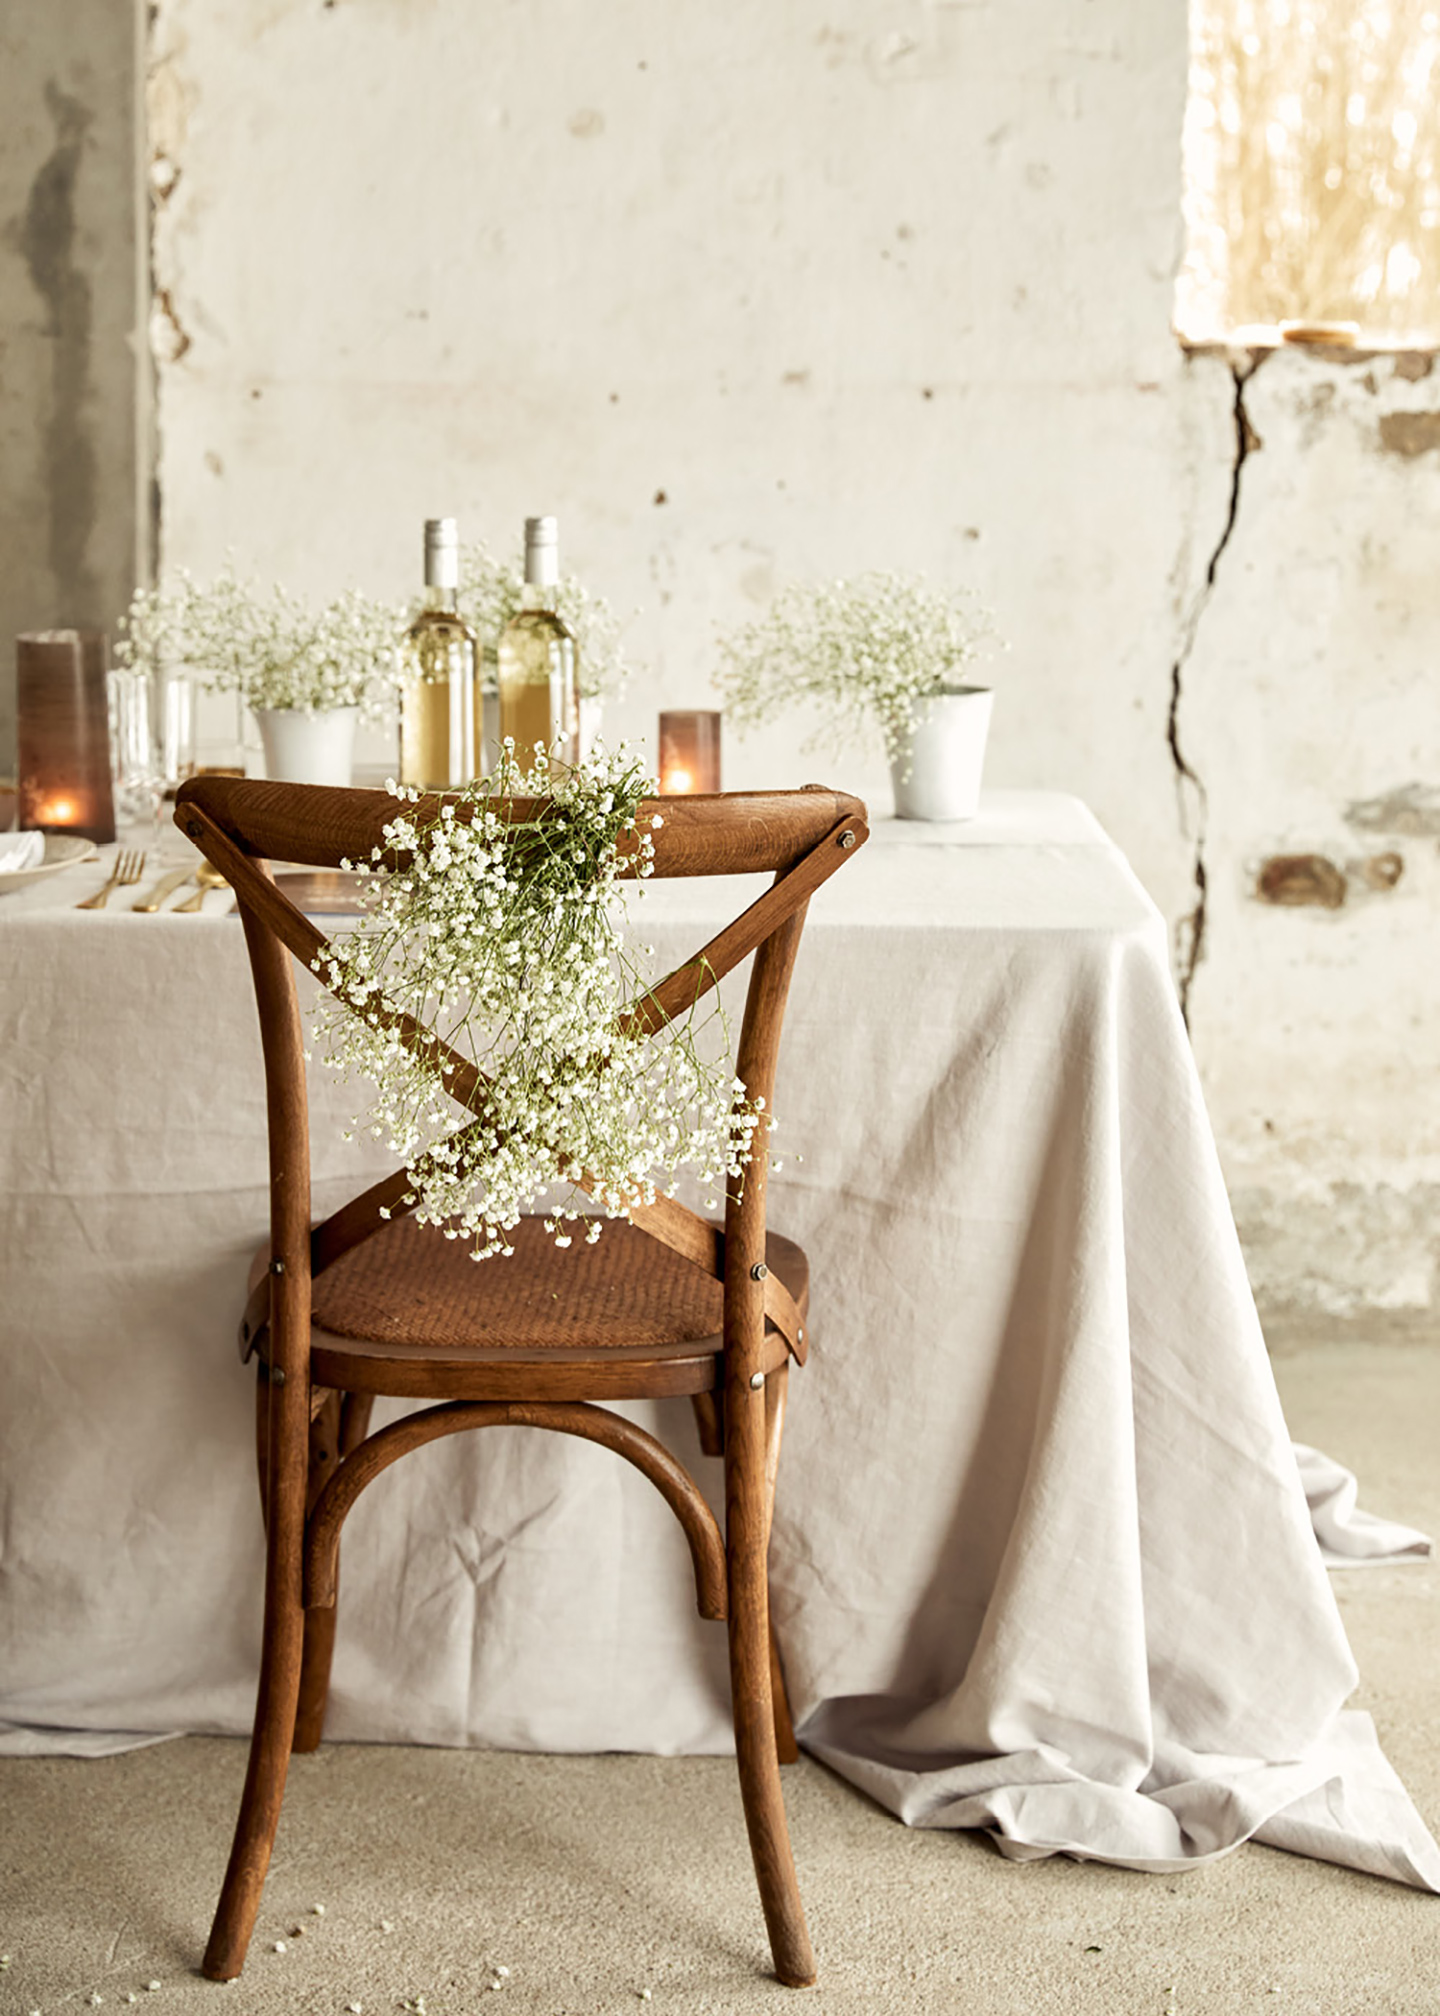 Tischdeko Hochzeit: Eine rustikale Location im Shabby-Chic-Look, ein im Vintage Stil dekorierter Hochzeitstisch mit weißer Tischdecke und dunklen Stühlen sowie goldenes Besteck und Schleierkraut geben ein harmonisches Bild.